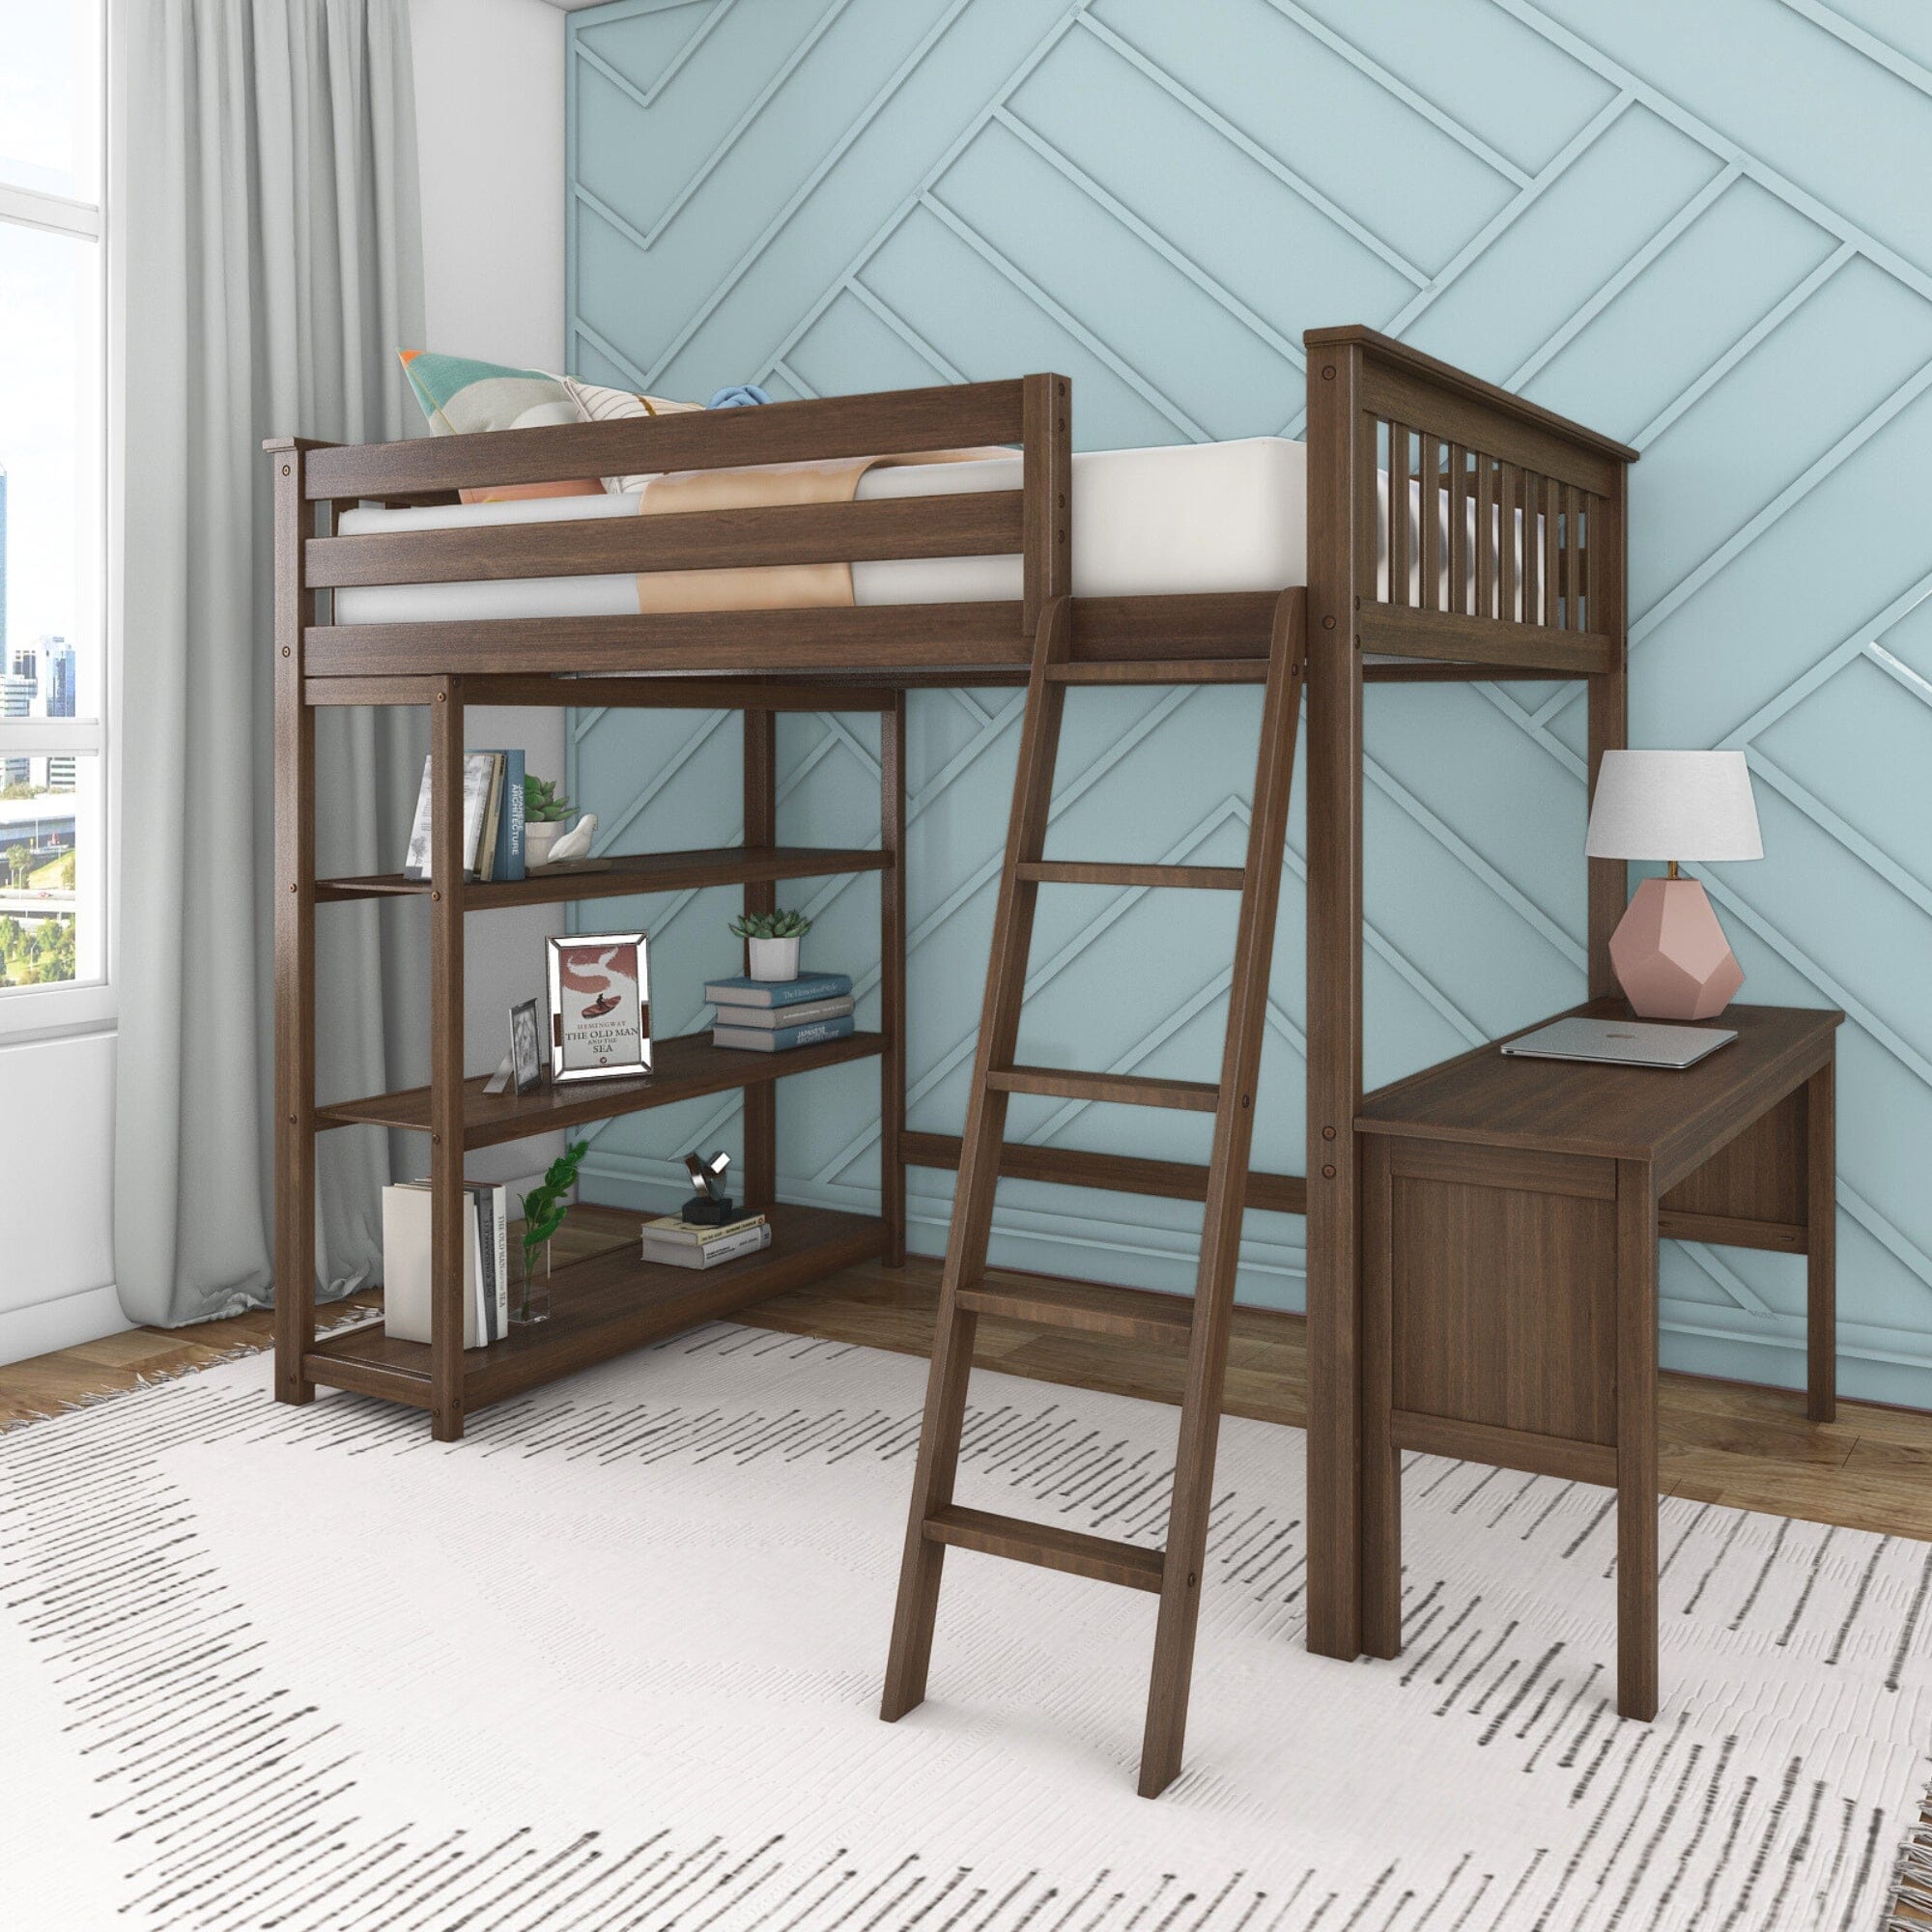 Full Size Loft Bed Solid Wood Bed Frame with Ladder, Shelves & Desk - Gray